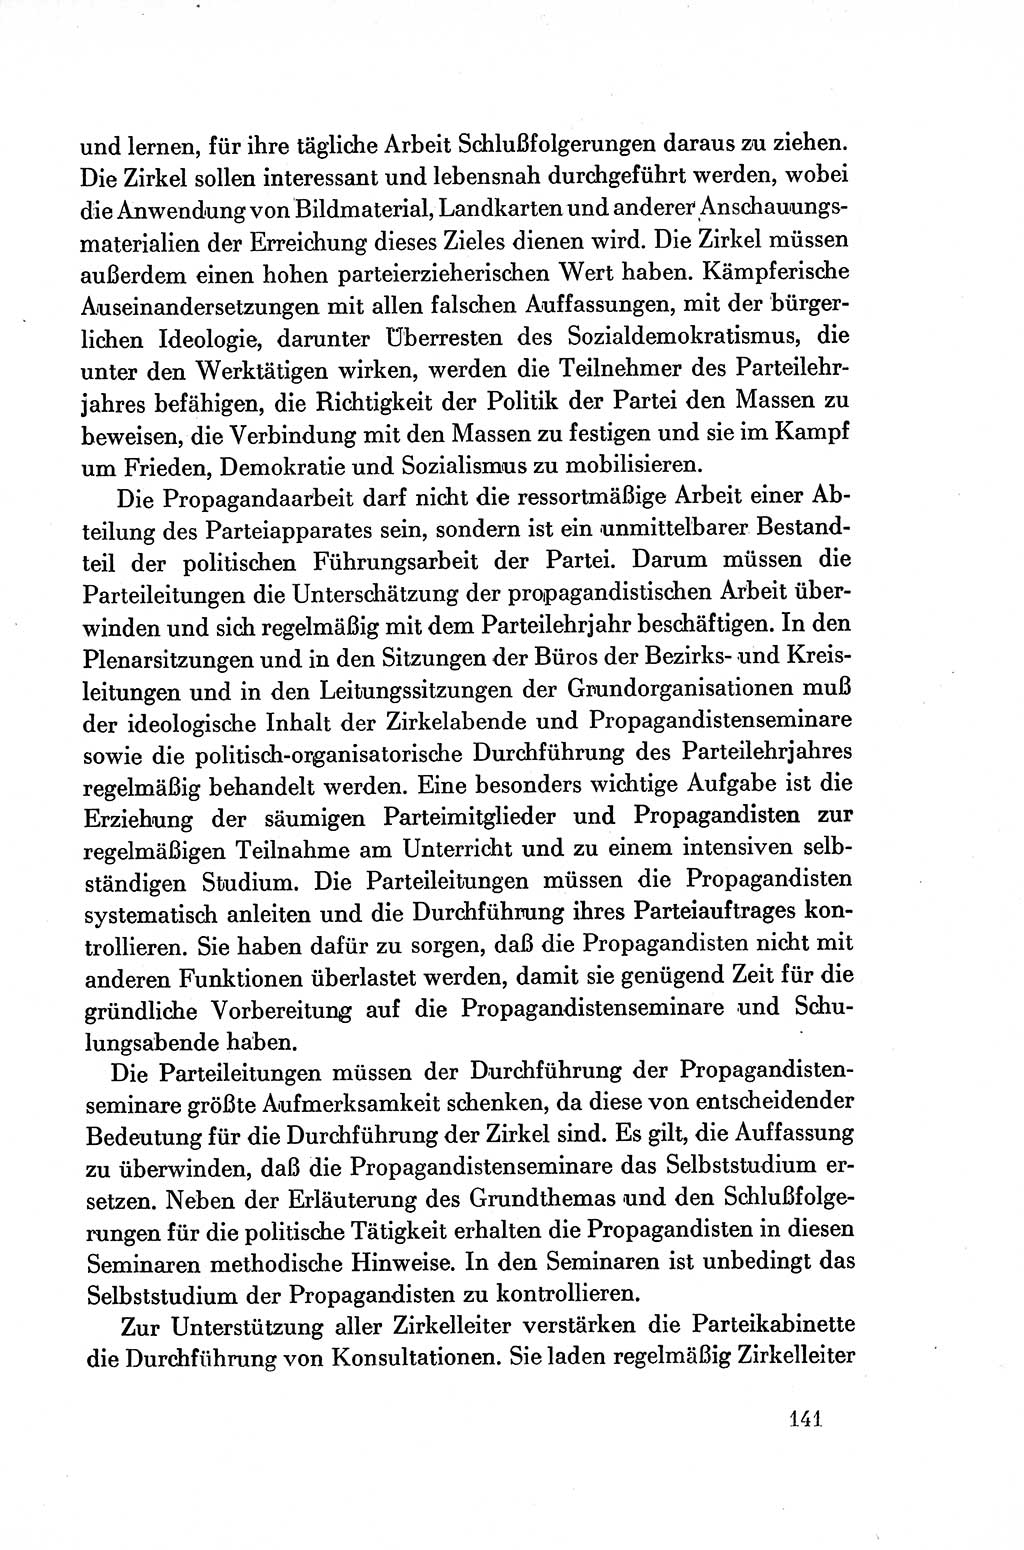 Dokumente der Sozialistischen Einheitspartei Deutschlands (SED) [Deutsche Demokratische Republik (DDR)] 1954-1955, Seite 141 (Dok. SED DDR 1954-1955, S. 141)